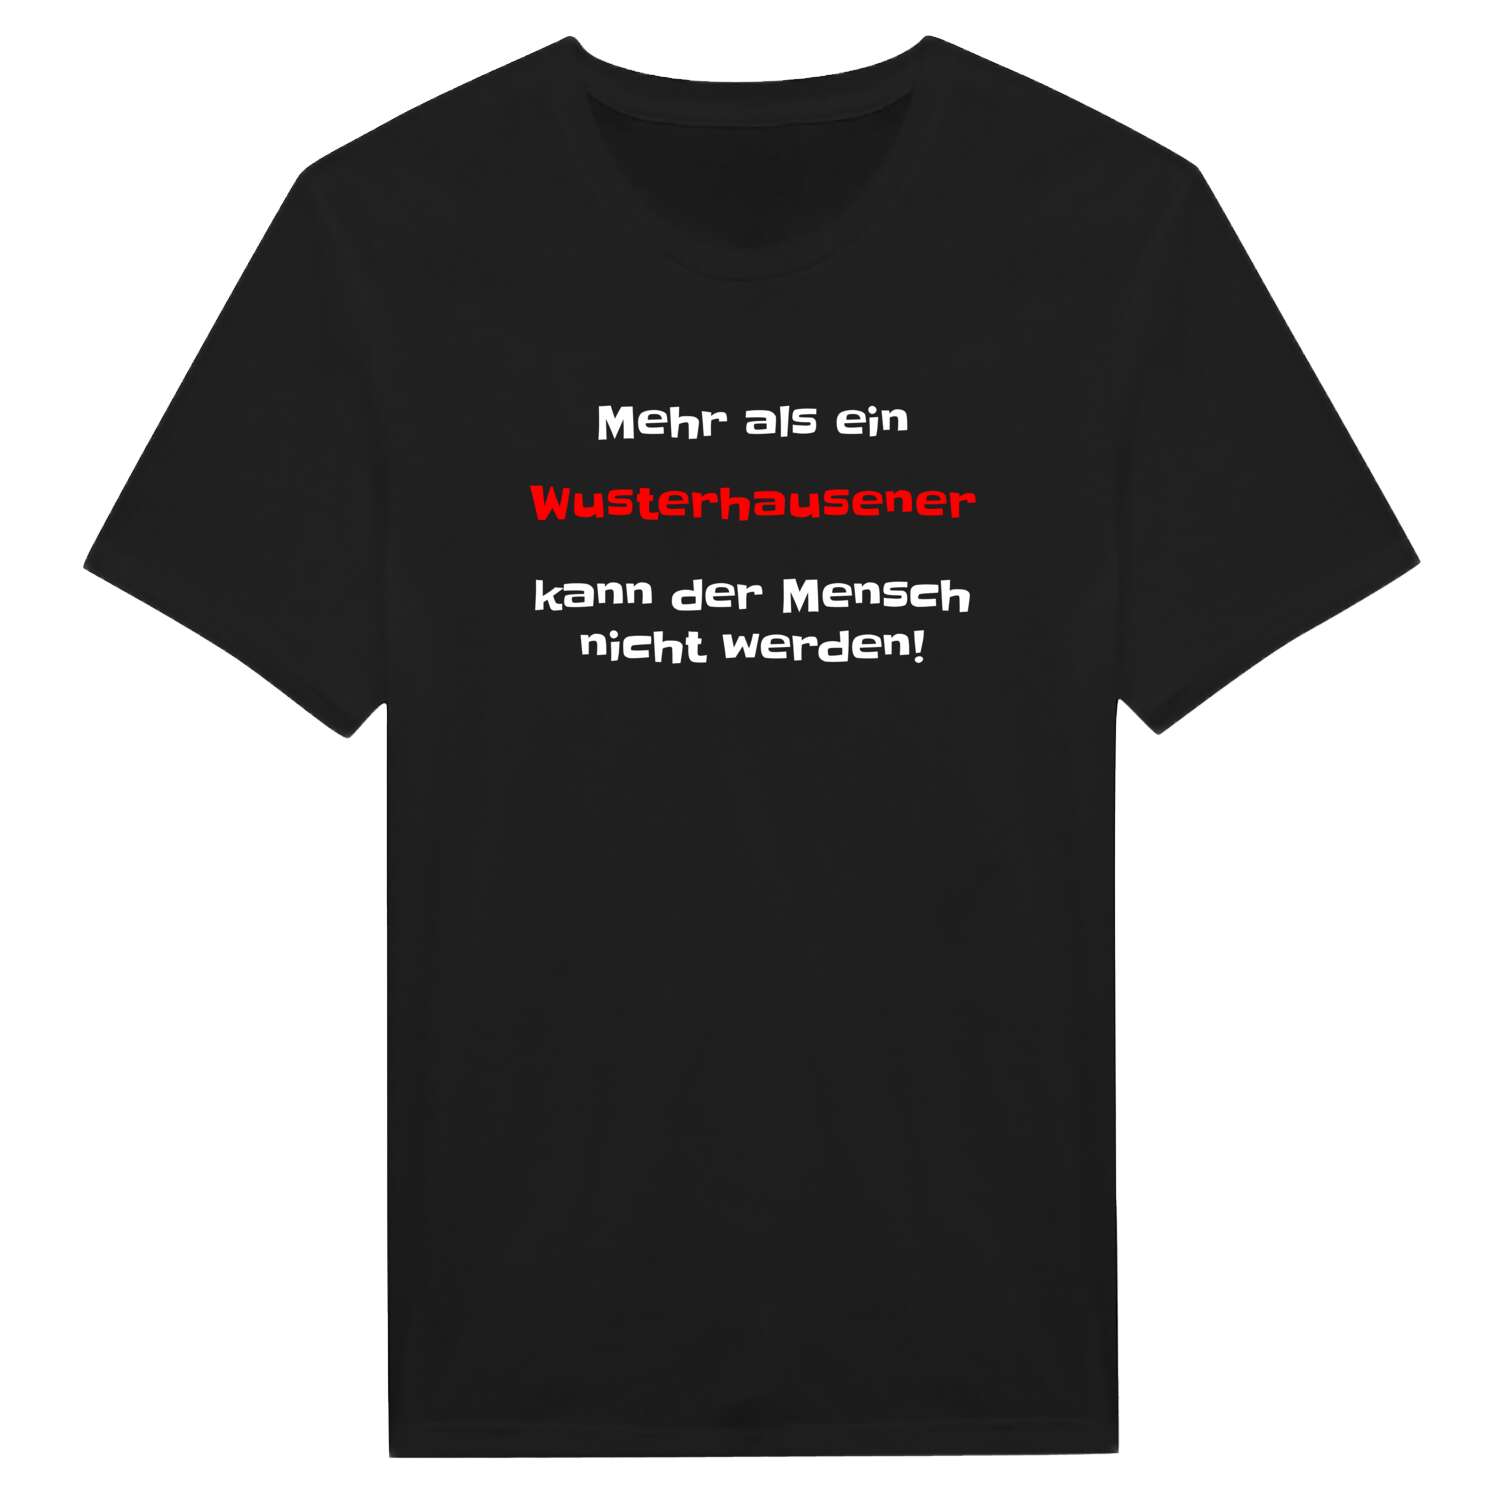 Wusterhausen T-Shirt »Mehr als ein«